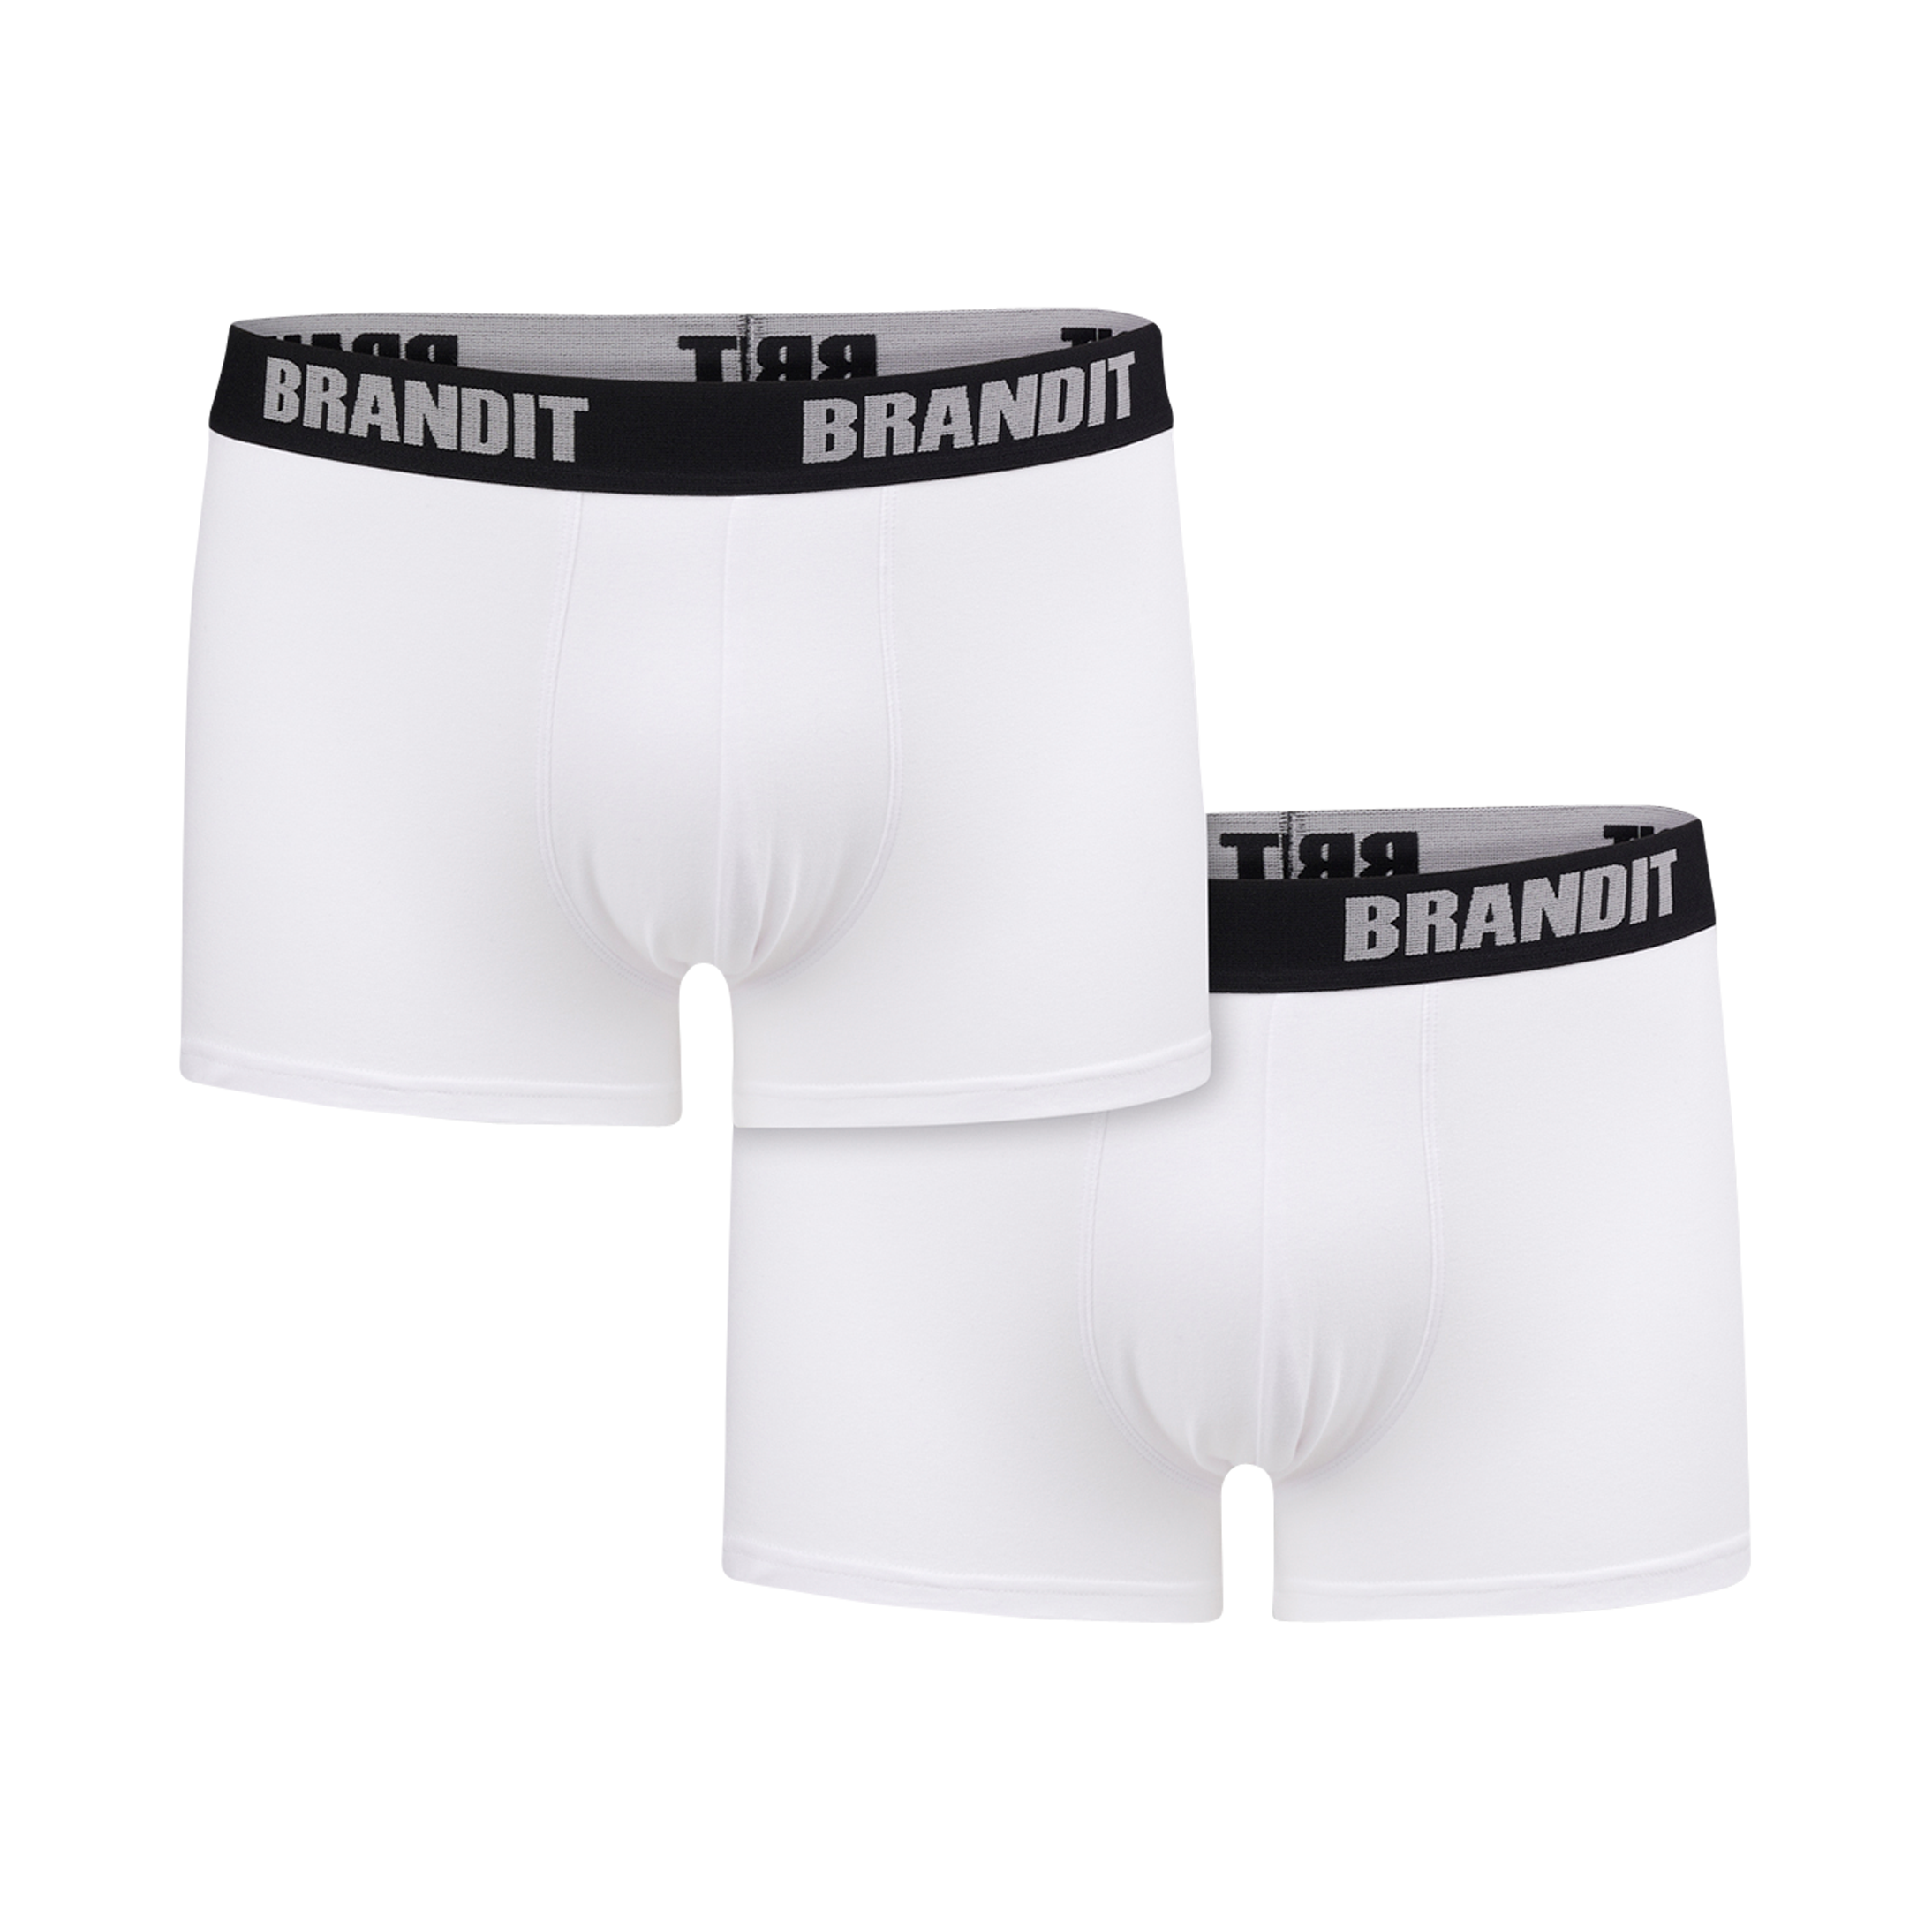 Brandit Boxer Underkläder Vit/